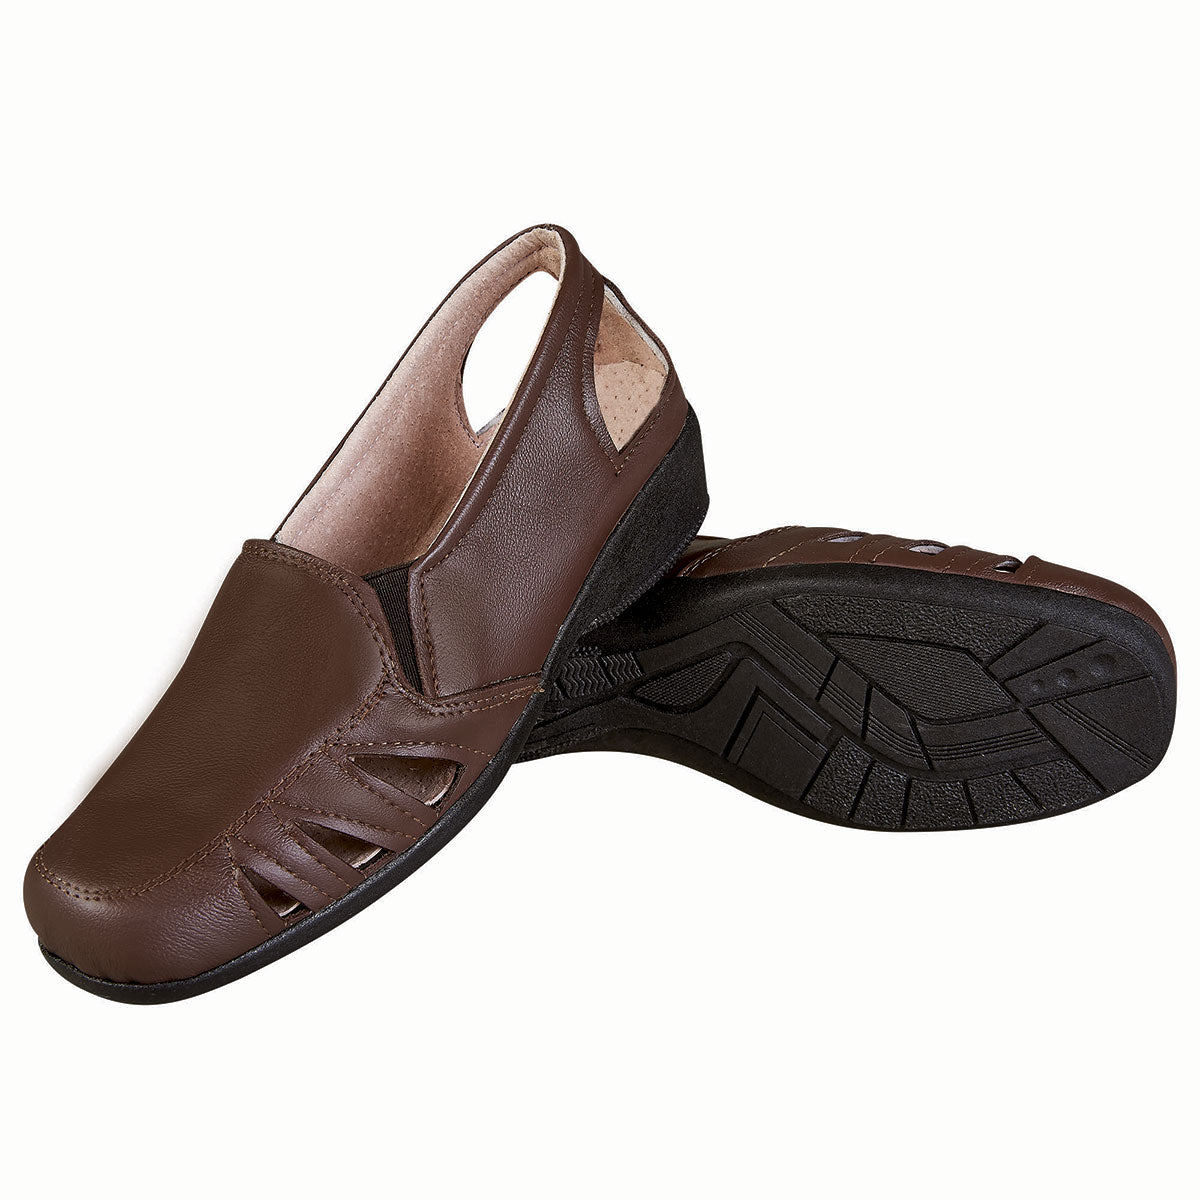 Zapato Confort Clasico Mujer CASTALIA 016-22 Café Ajustable